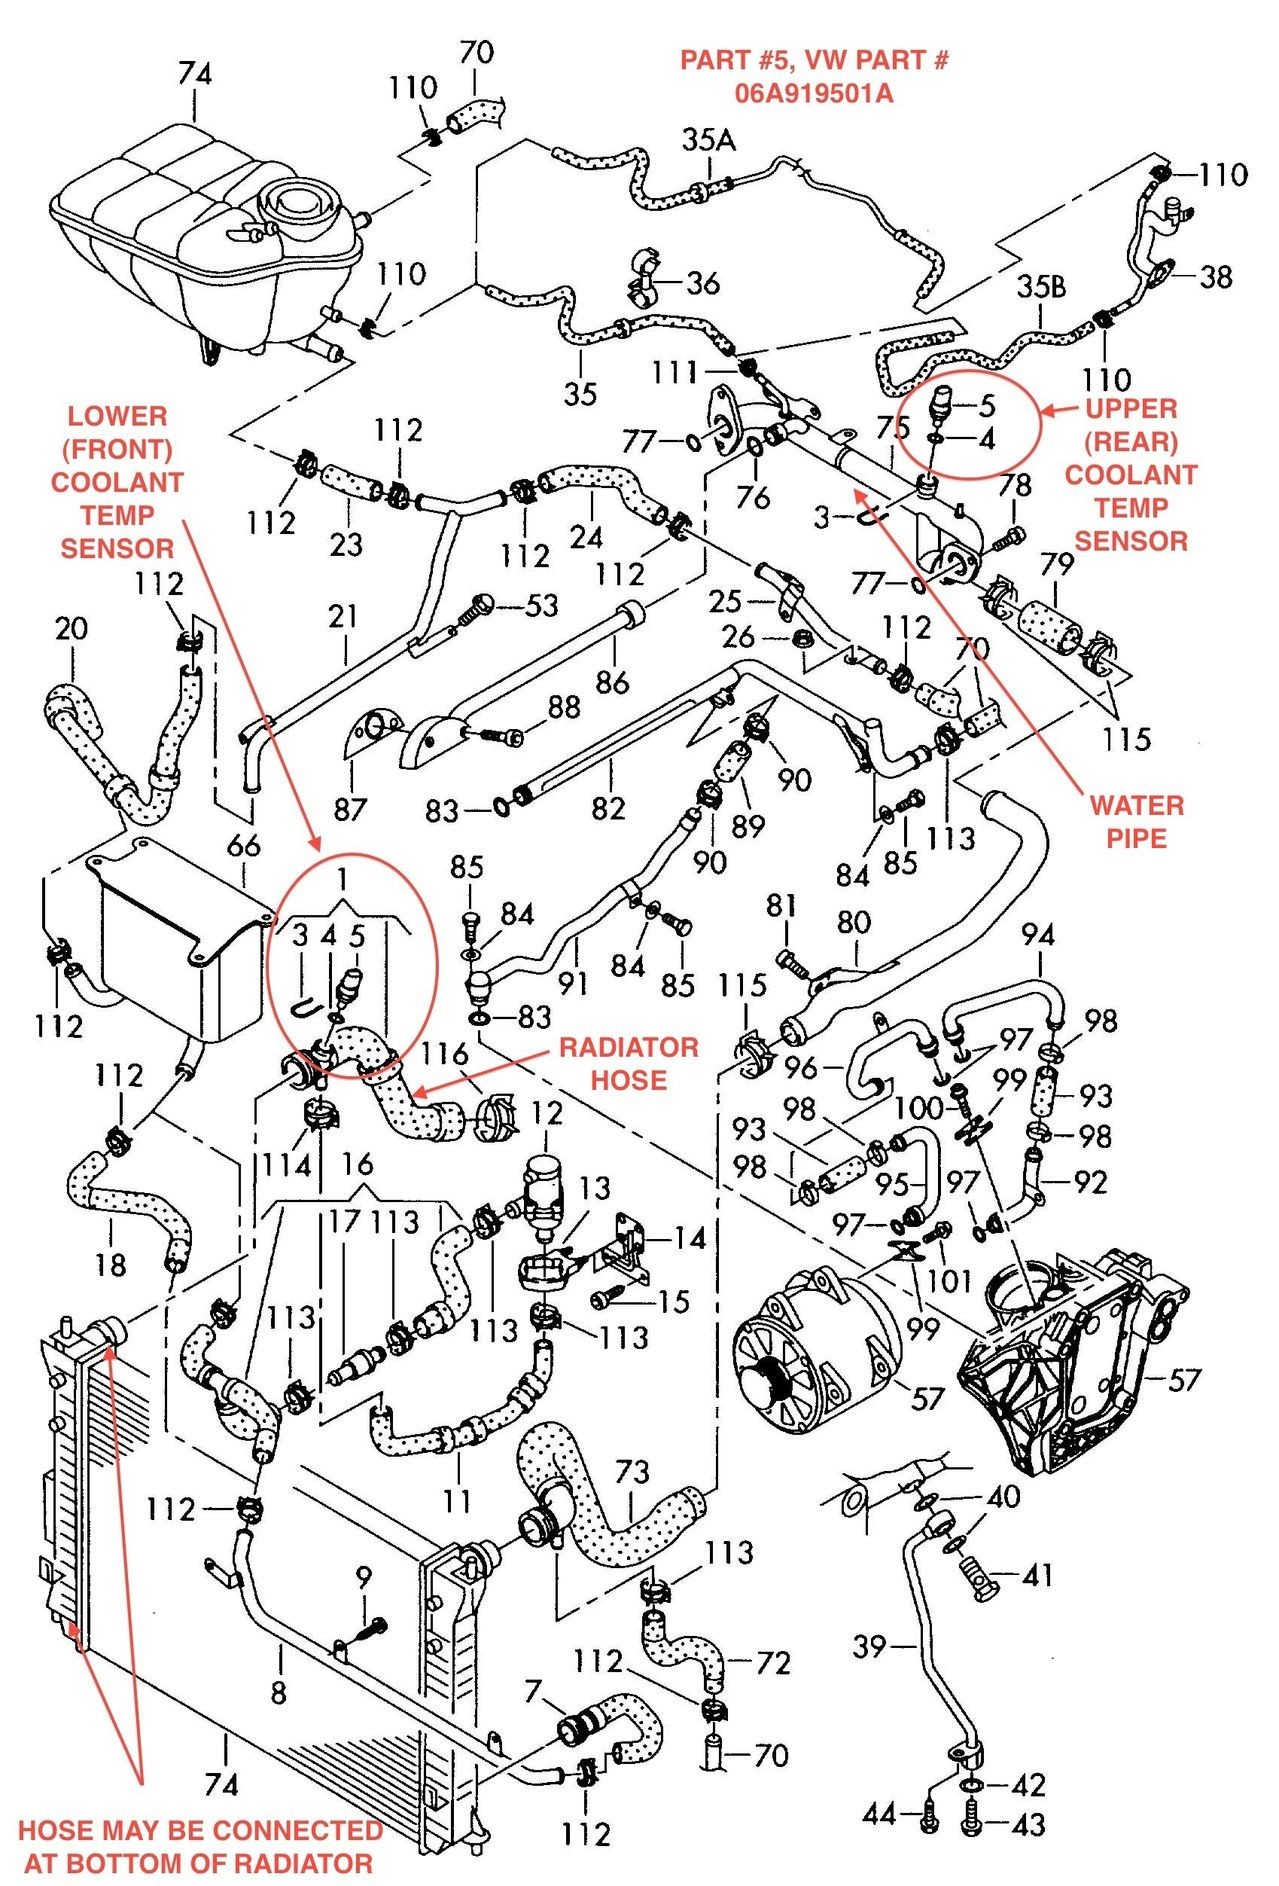 2001 Volkswagen Passat Engine Diagram Volkswagen Timing Belt and Cover Volkswagen Circuit Diagrams Of 2001 Volkswagen Passat Engine Diagram